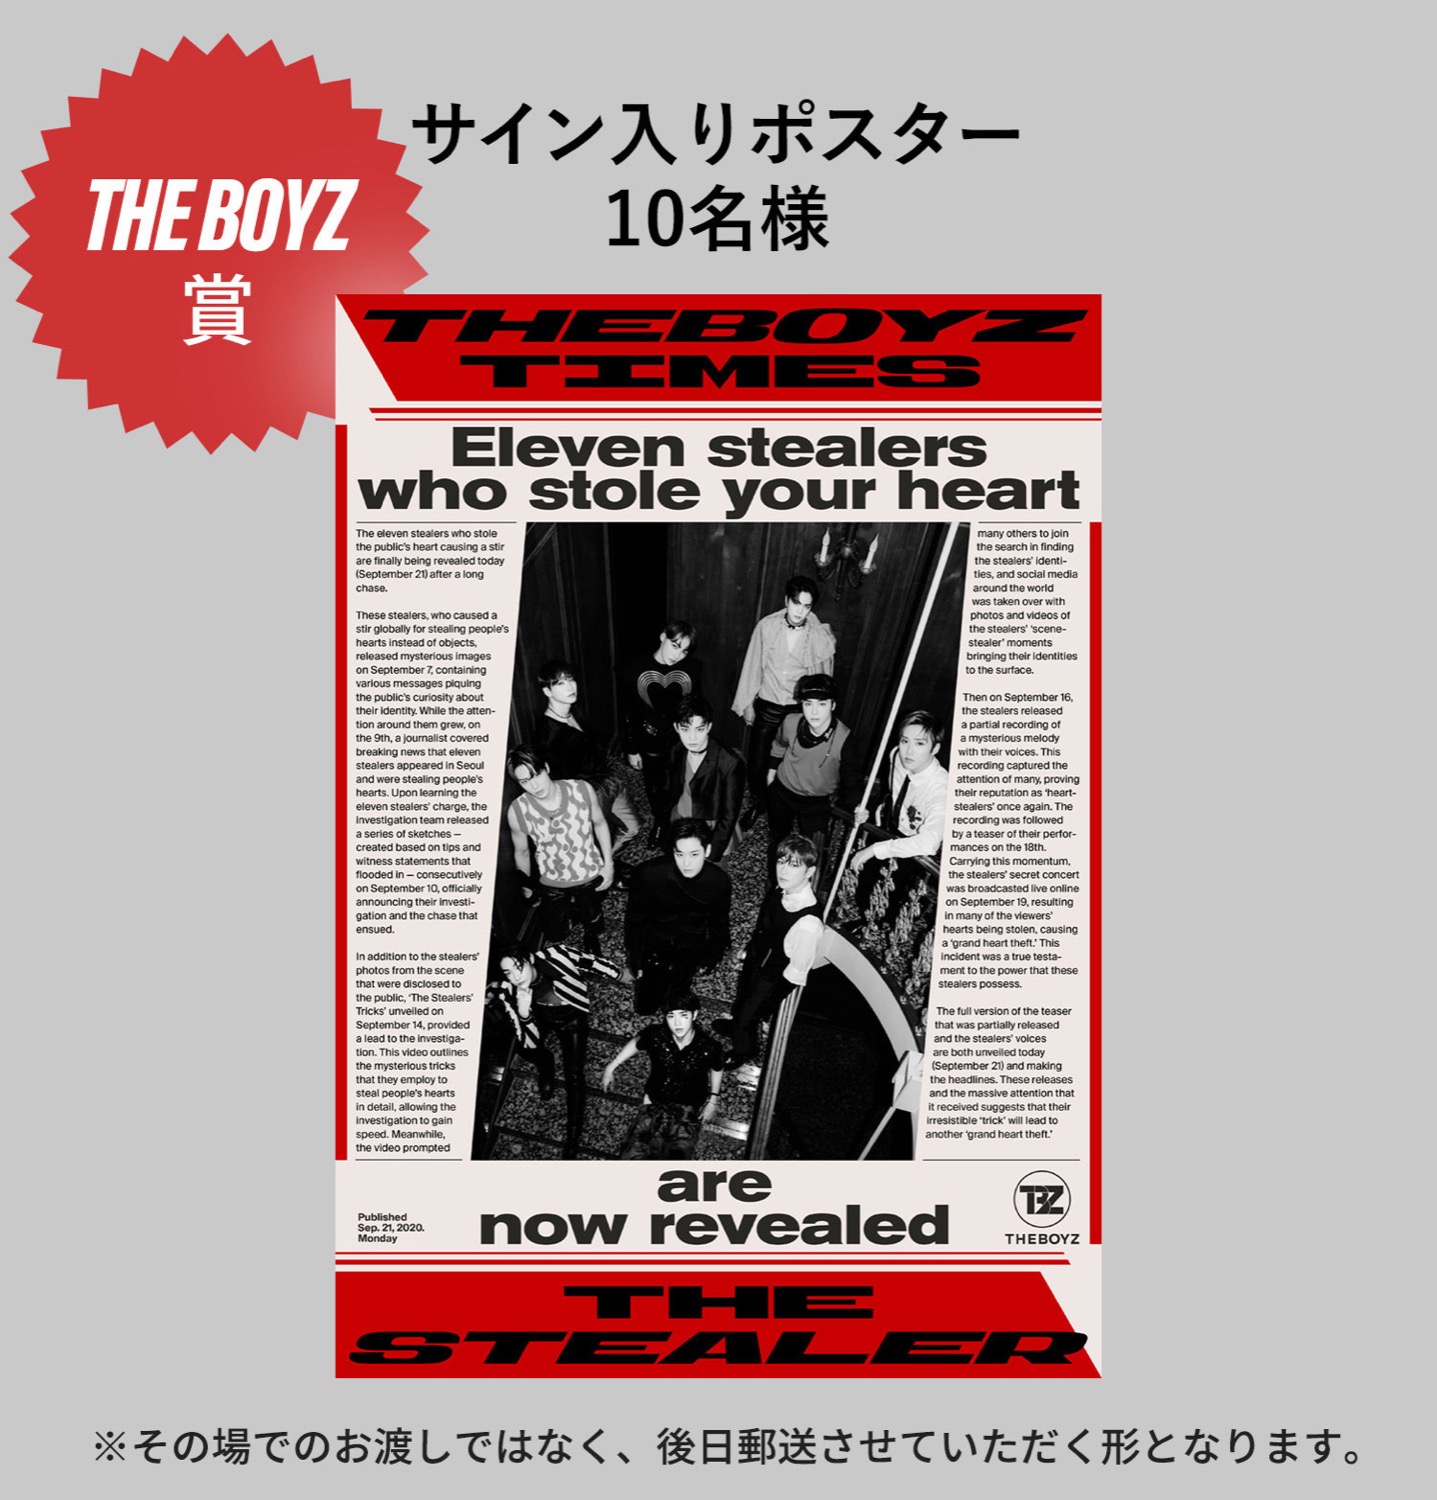 The Boyz ポップアップストア In Shibuya109 10 6 10 18 開催